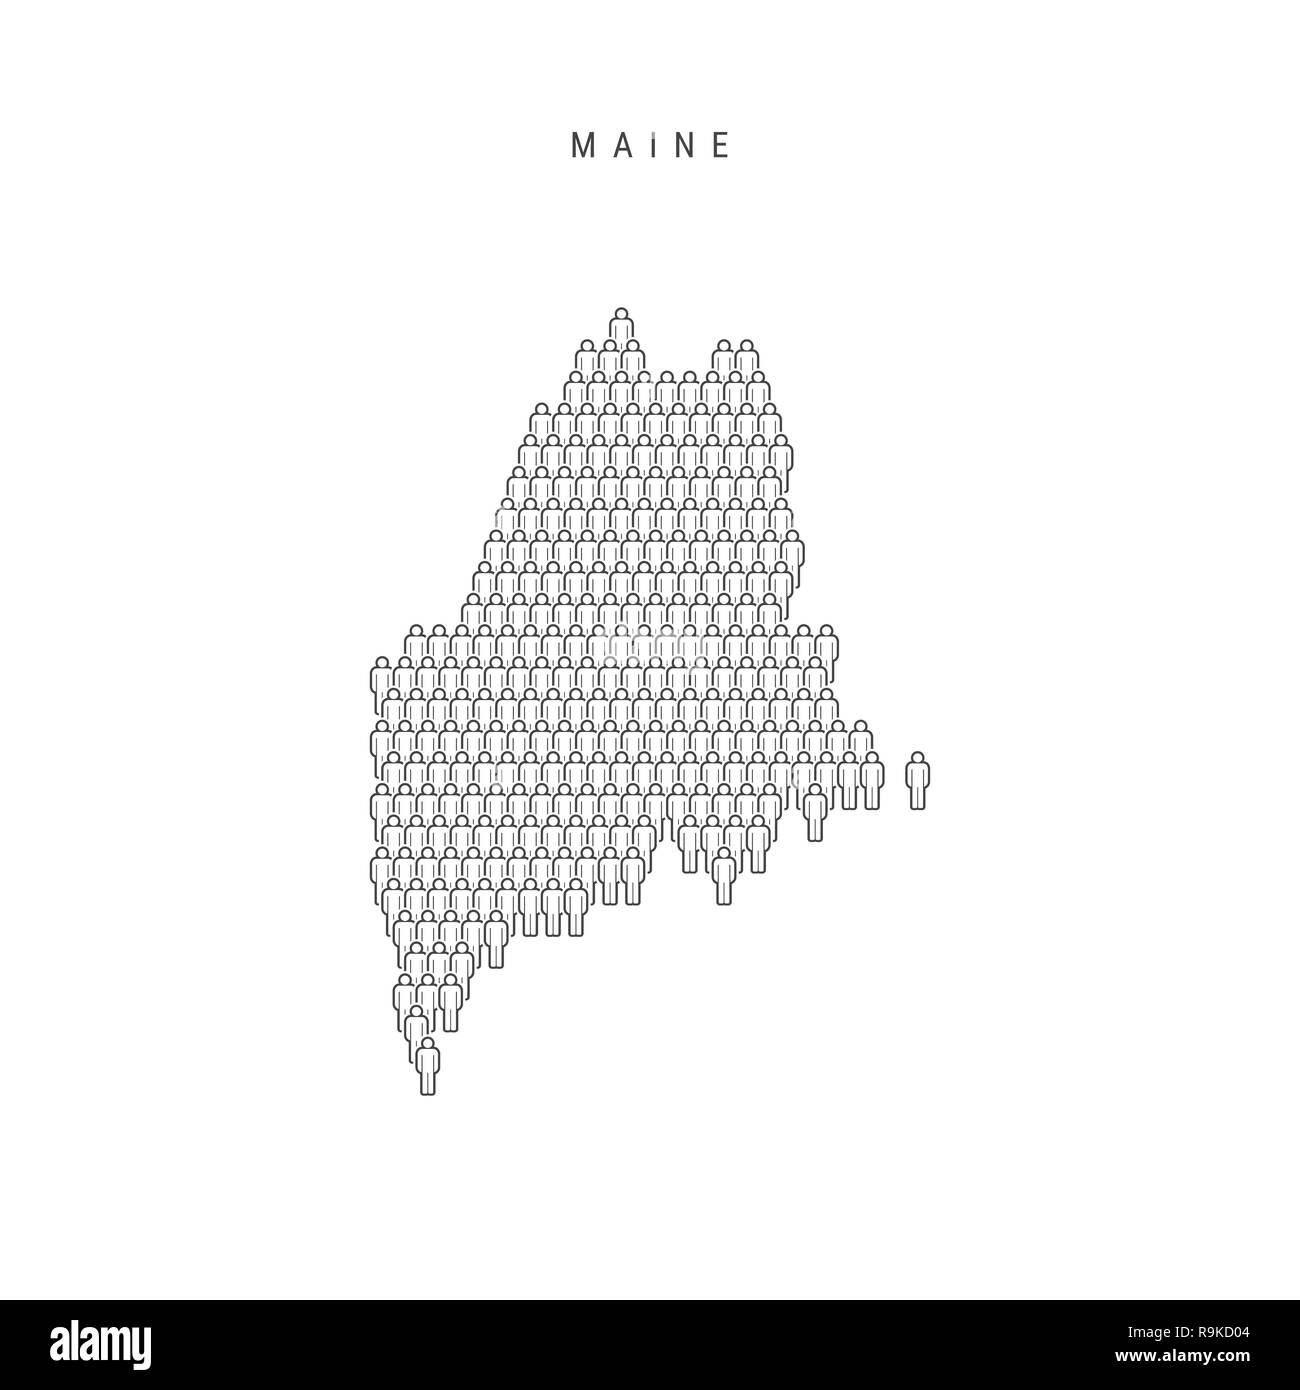 Leute Karte von Maine, USA. Stilisierte Silhouette, Leute in der Form einer Karte von Maine. Maine Bevölkerung. Abbildung isoliert auf Weiß Zurück Stockfoto